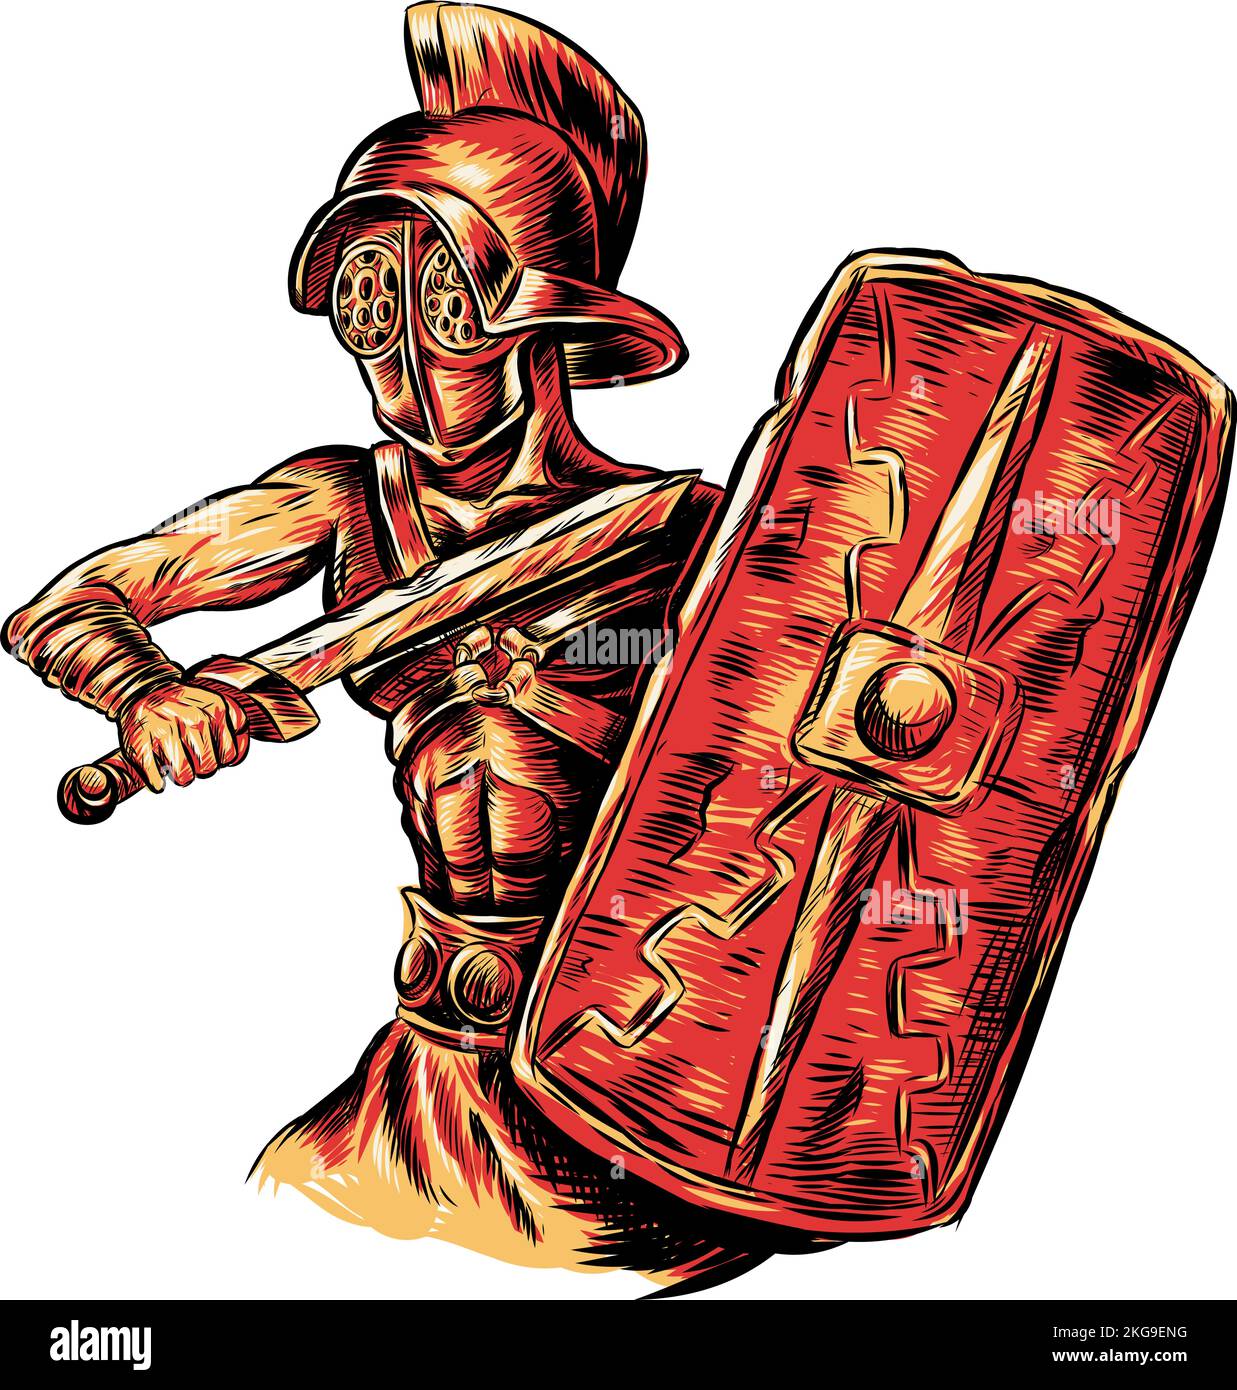 Gladiator warrior hand drawn. vector illustration illustration Stock Vector